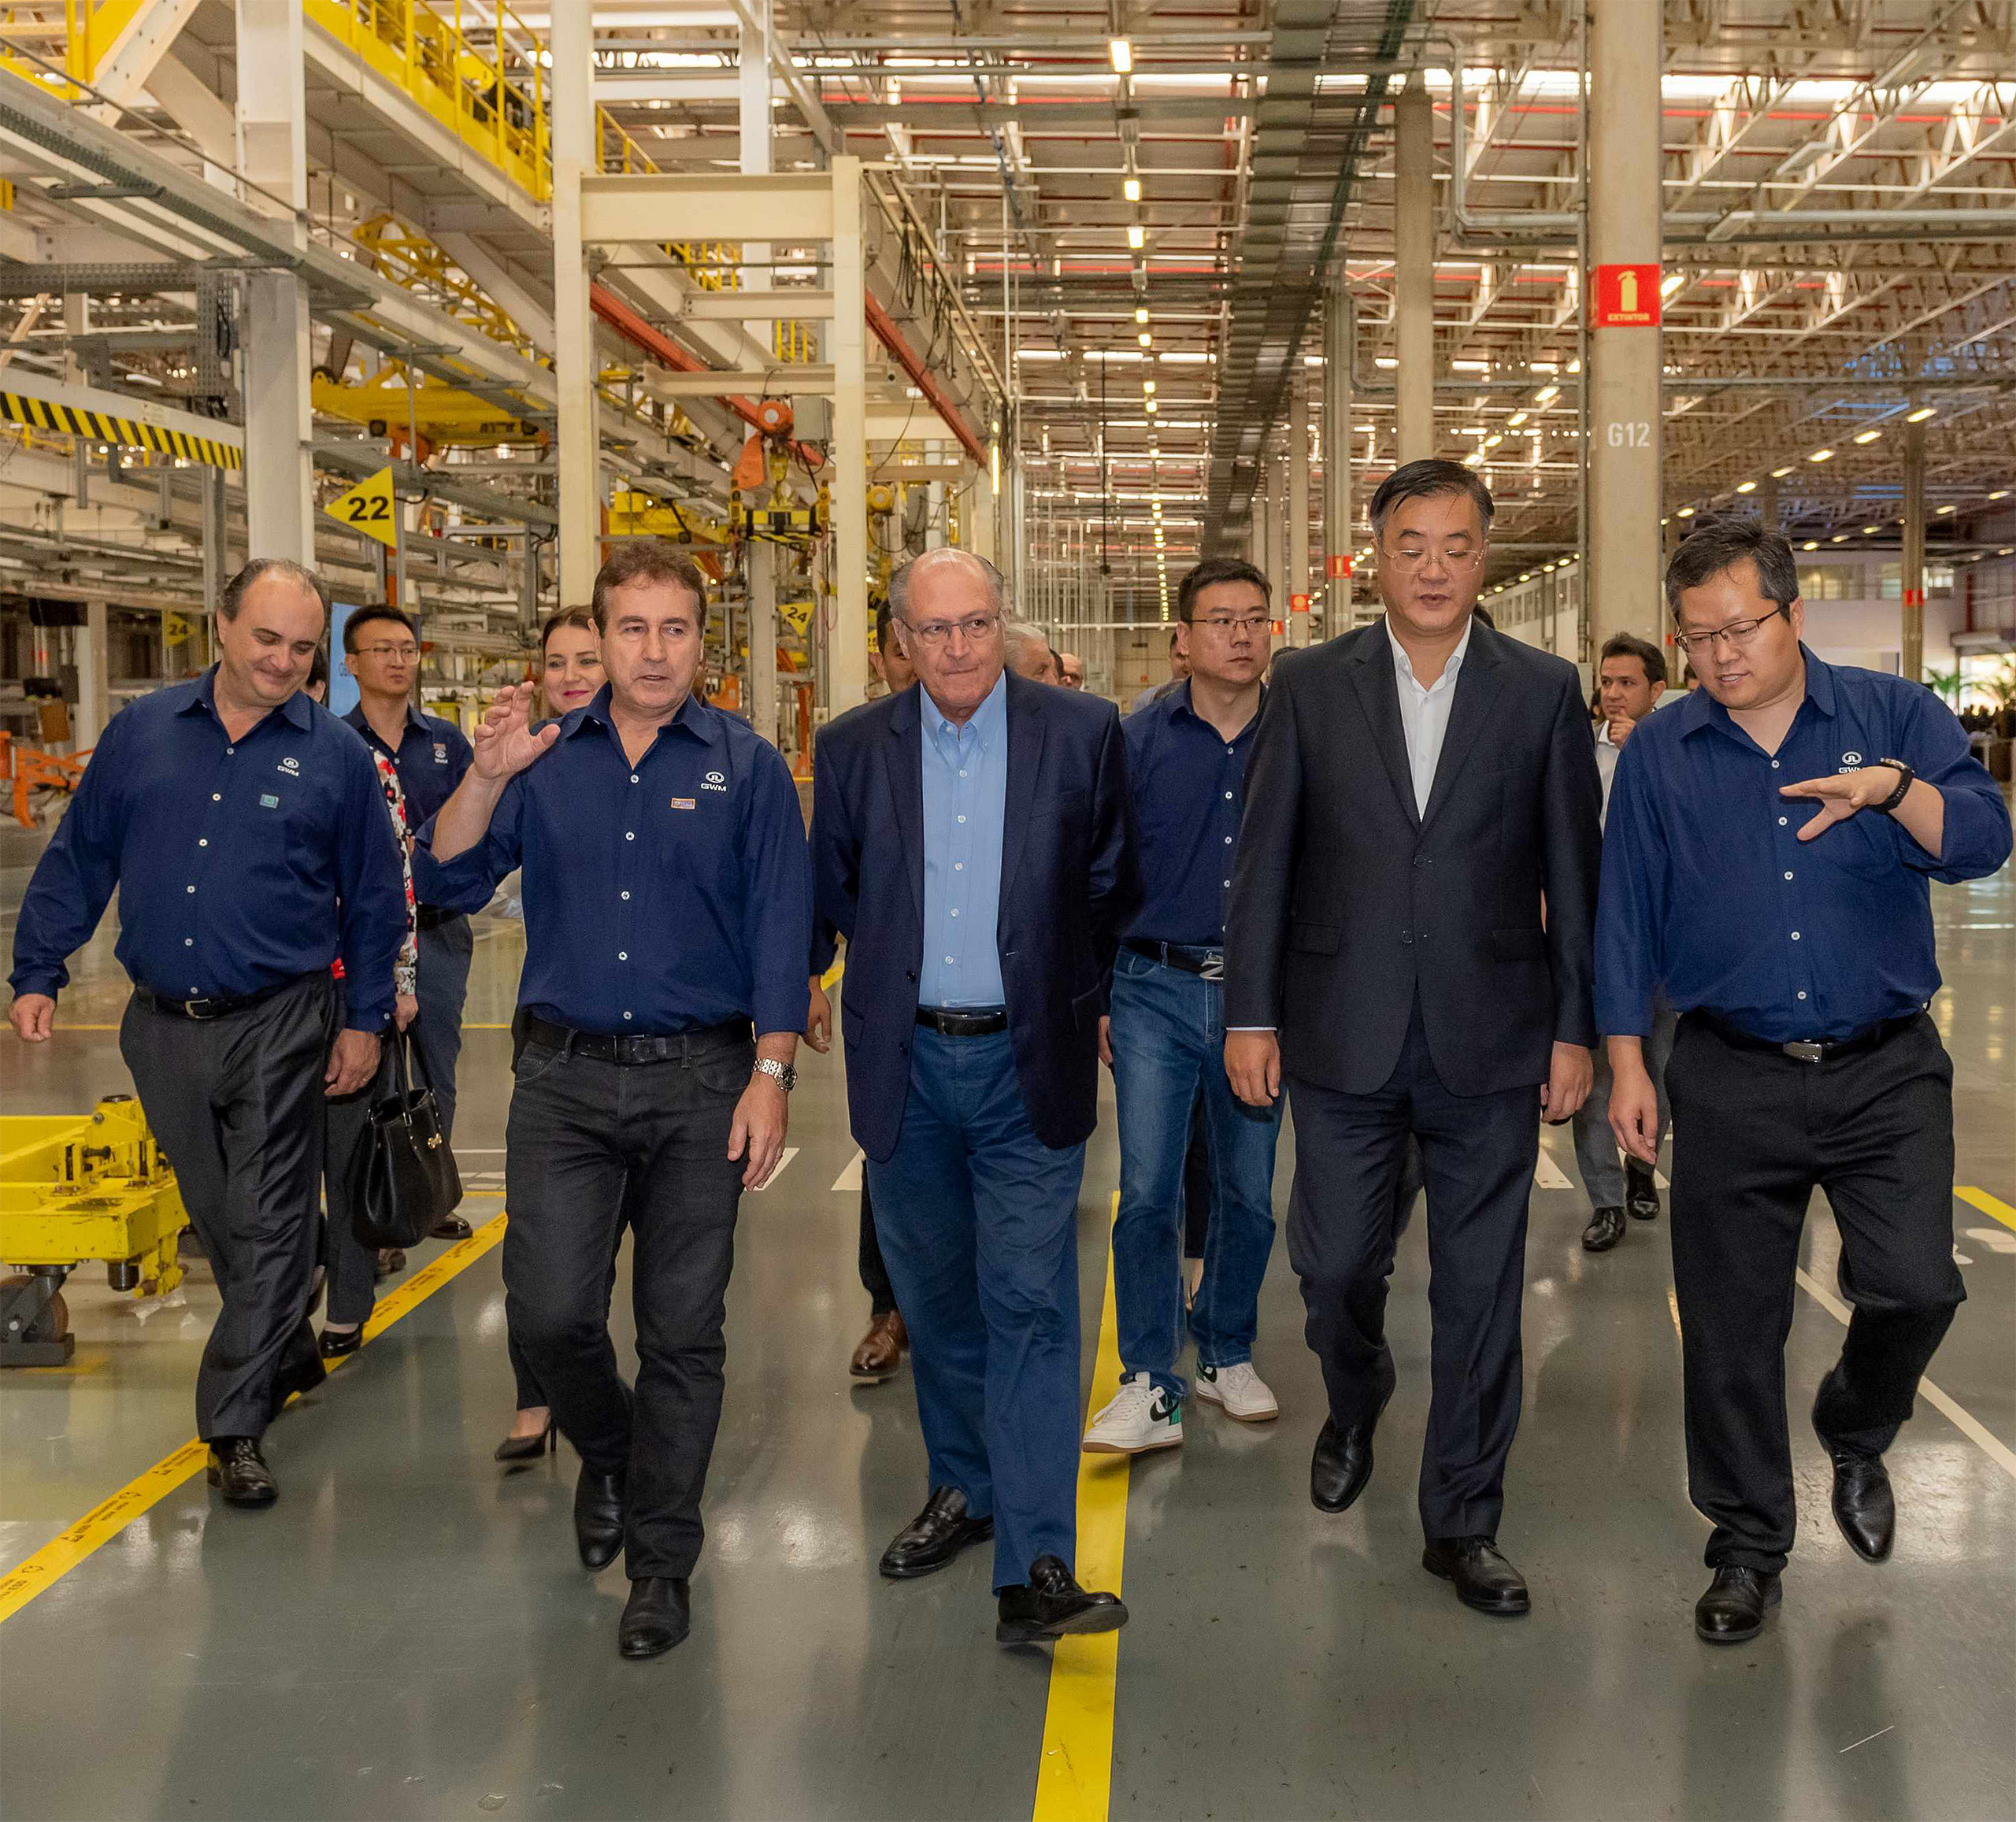 Un grupo de hombres caminando en una fábrica